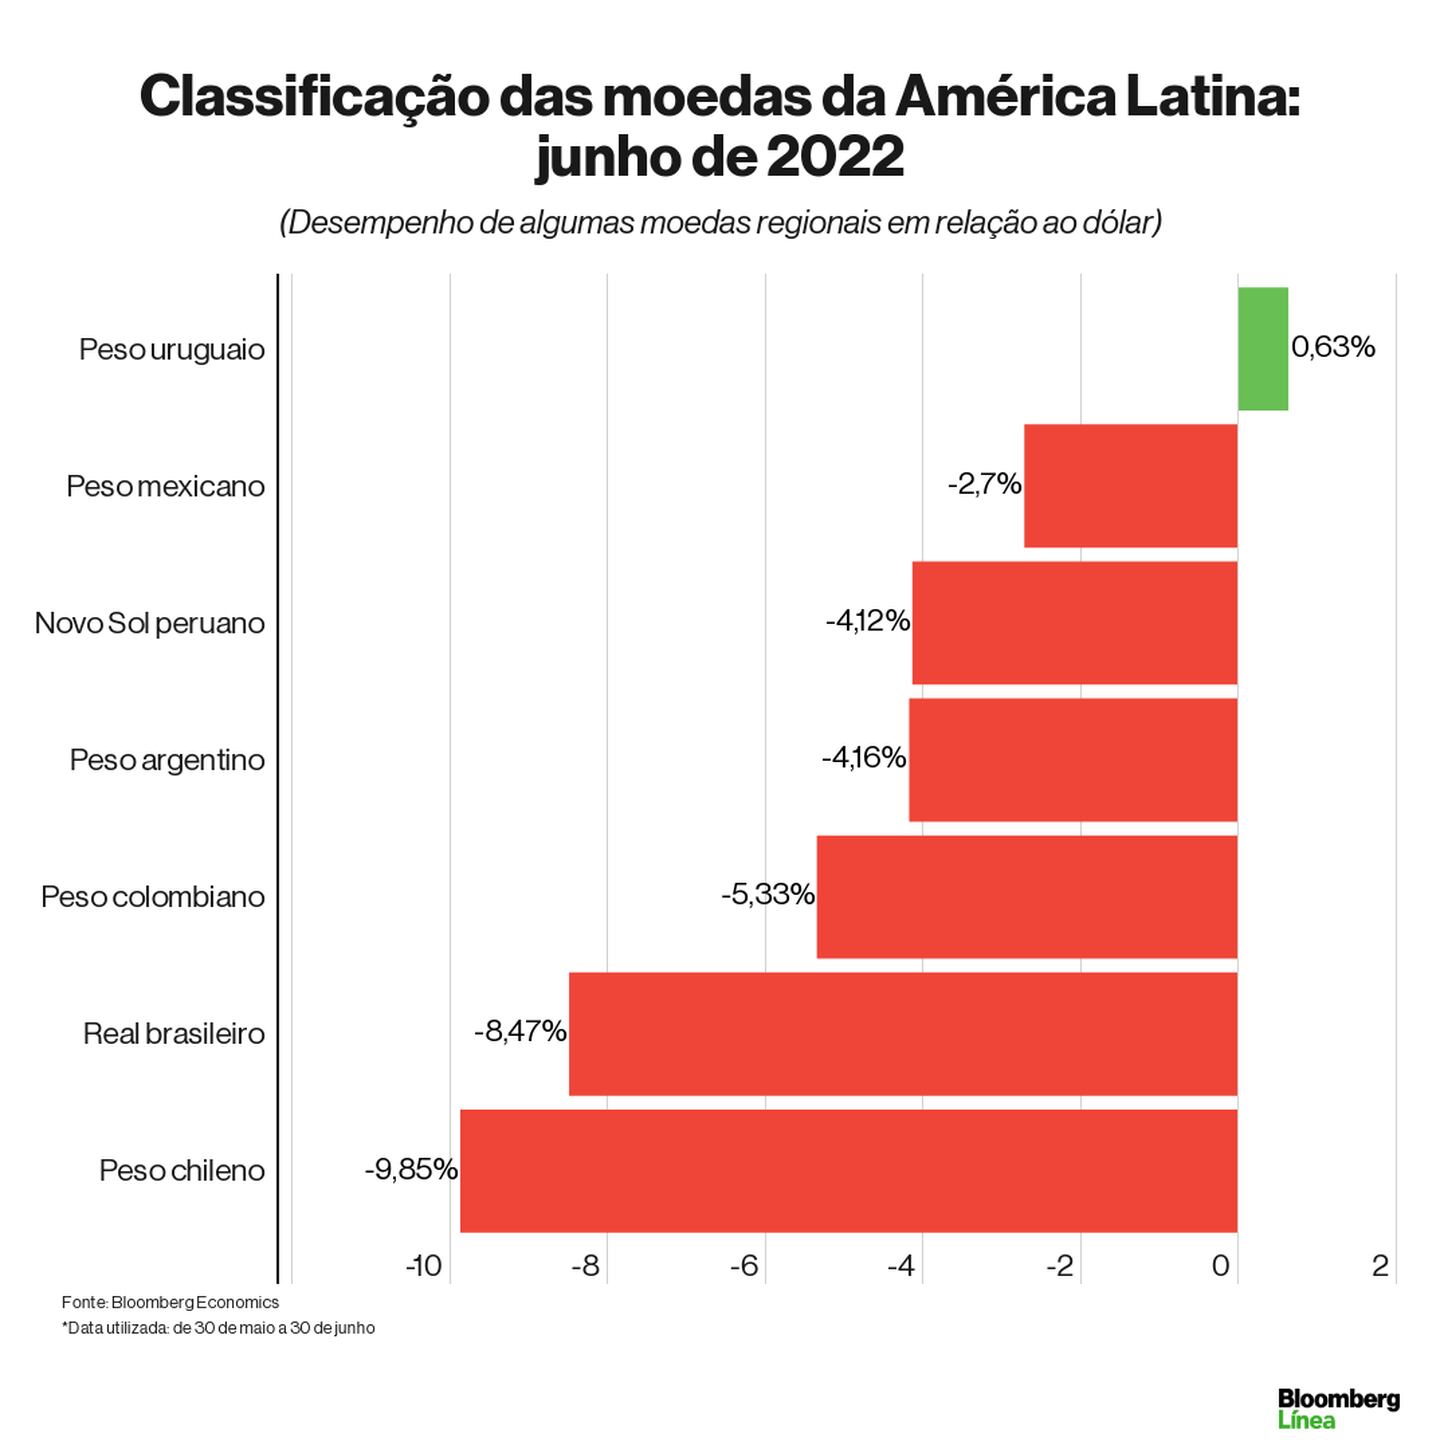 Junho foi até agora o pior mês do ano em termos de desempenho para as moedas da América Latinadfd